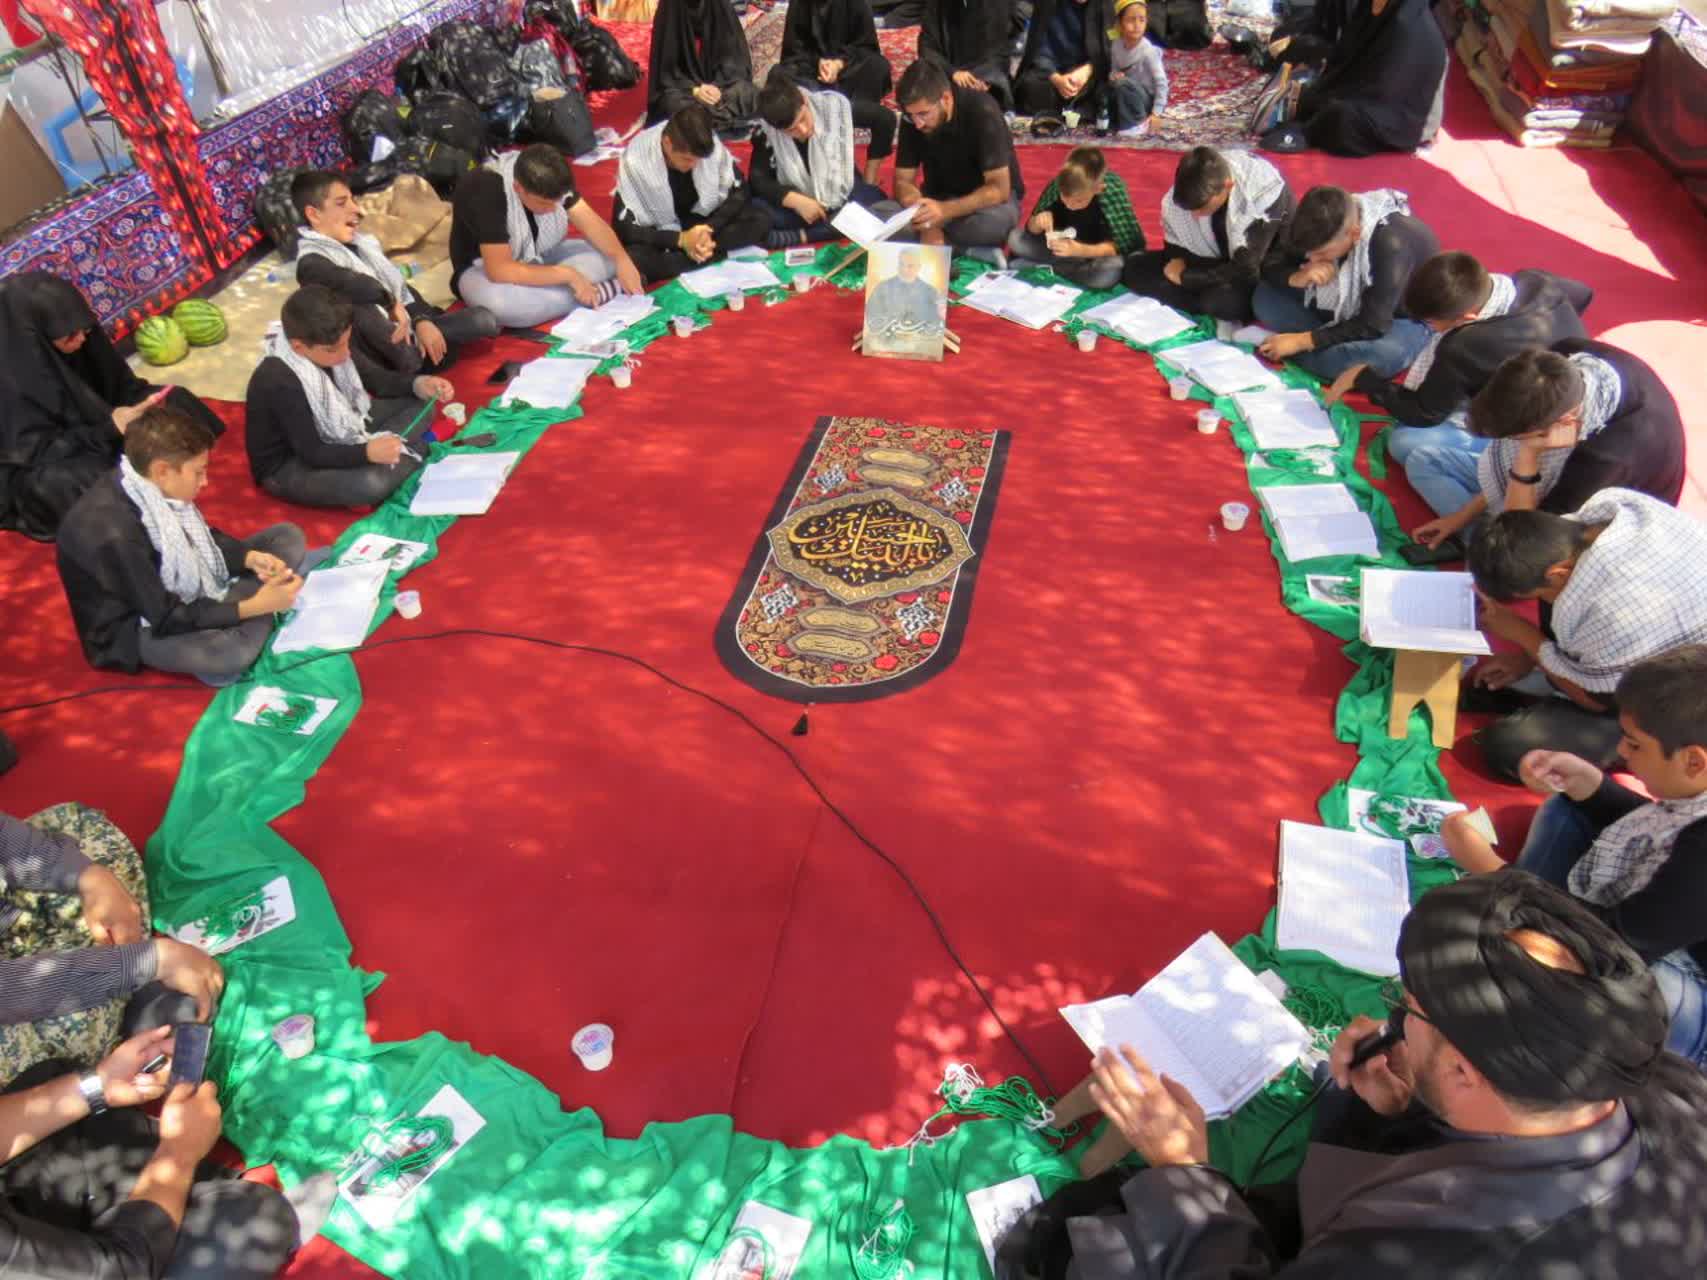 بچه هاي مسجد در مرز تمرچين، محفل انس با قرآن کريم برگزار مي کنند